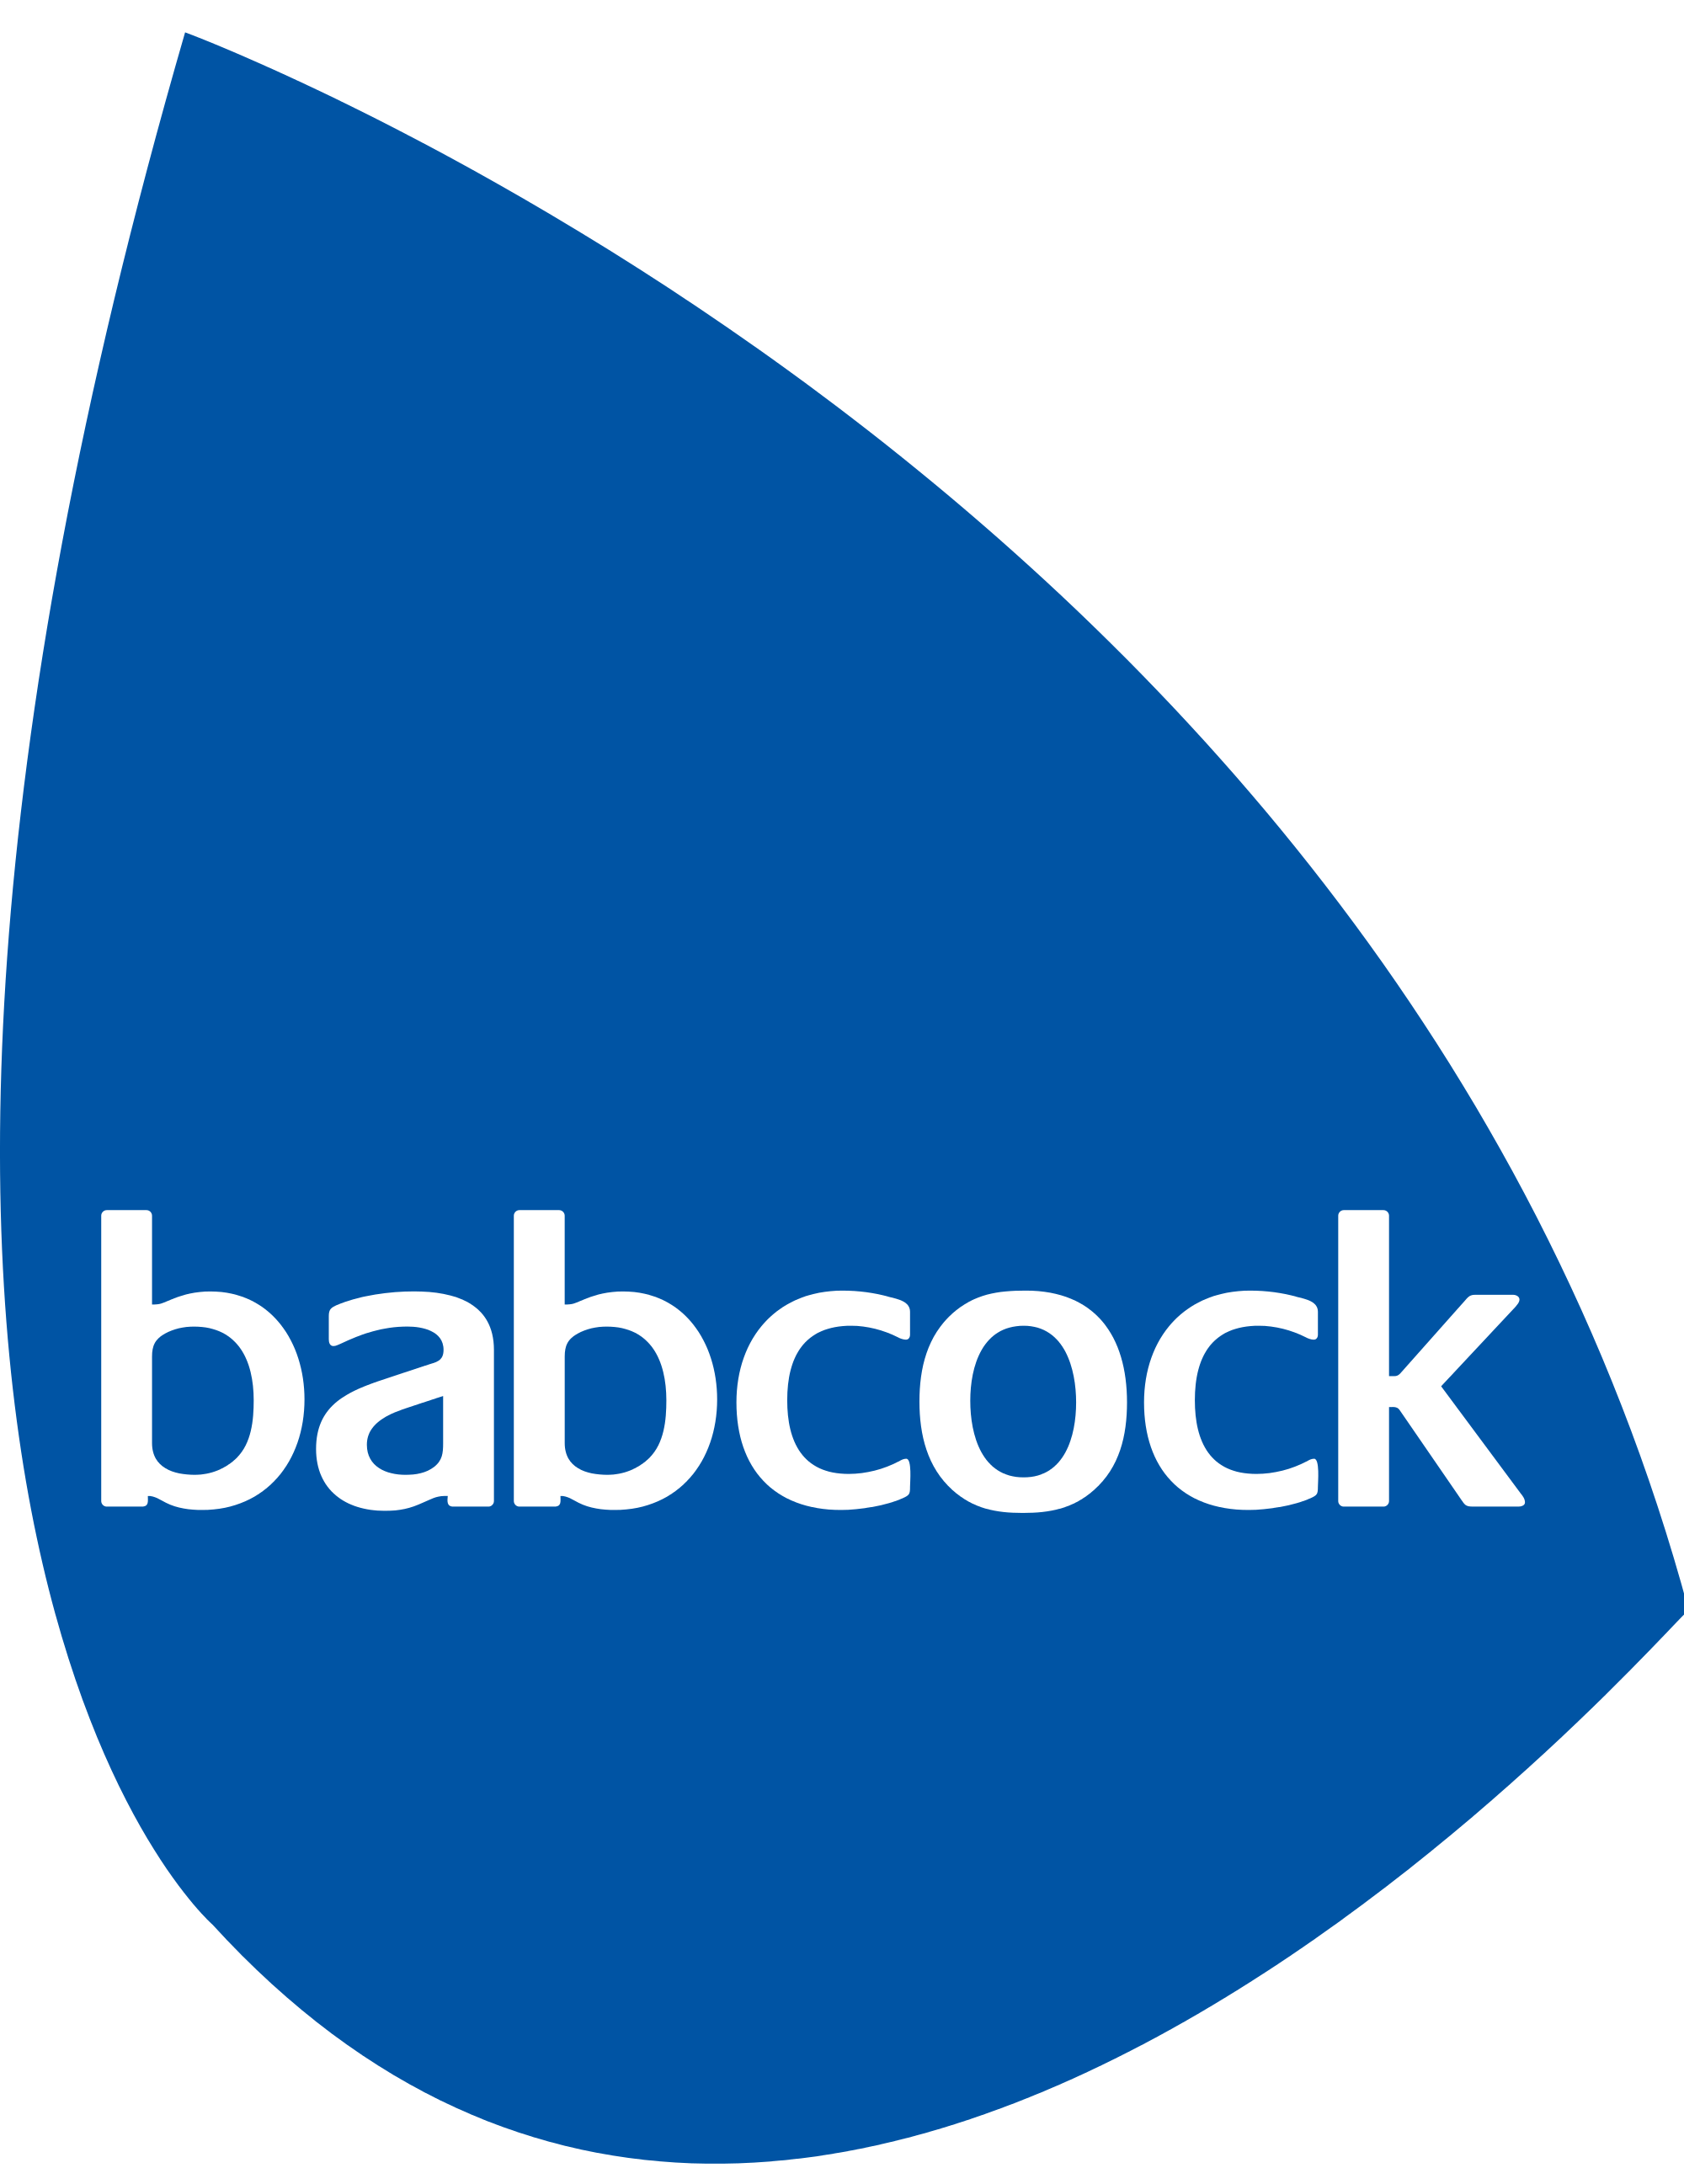 Backcock